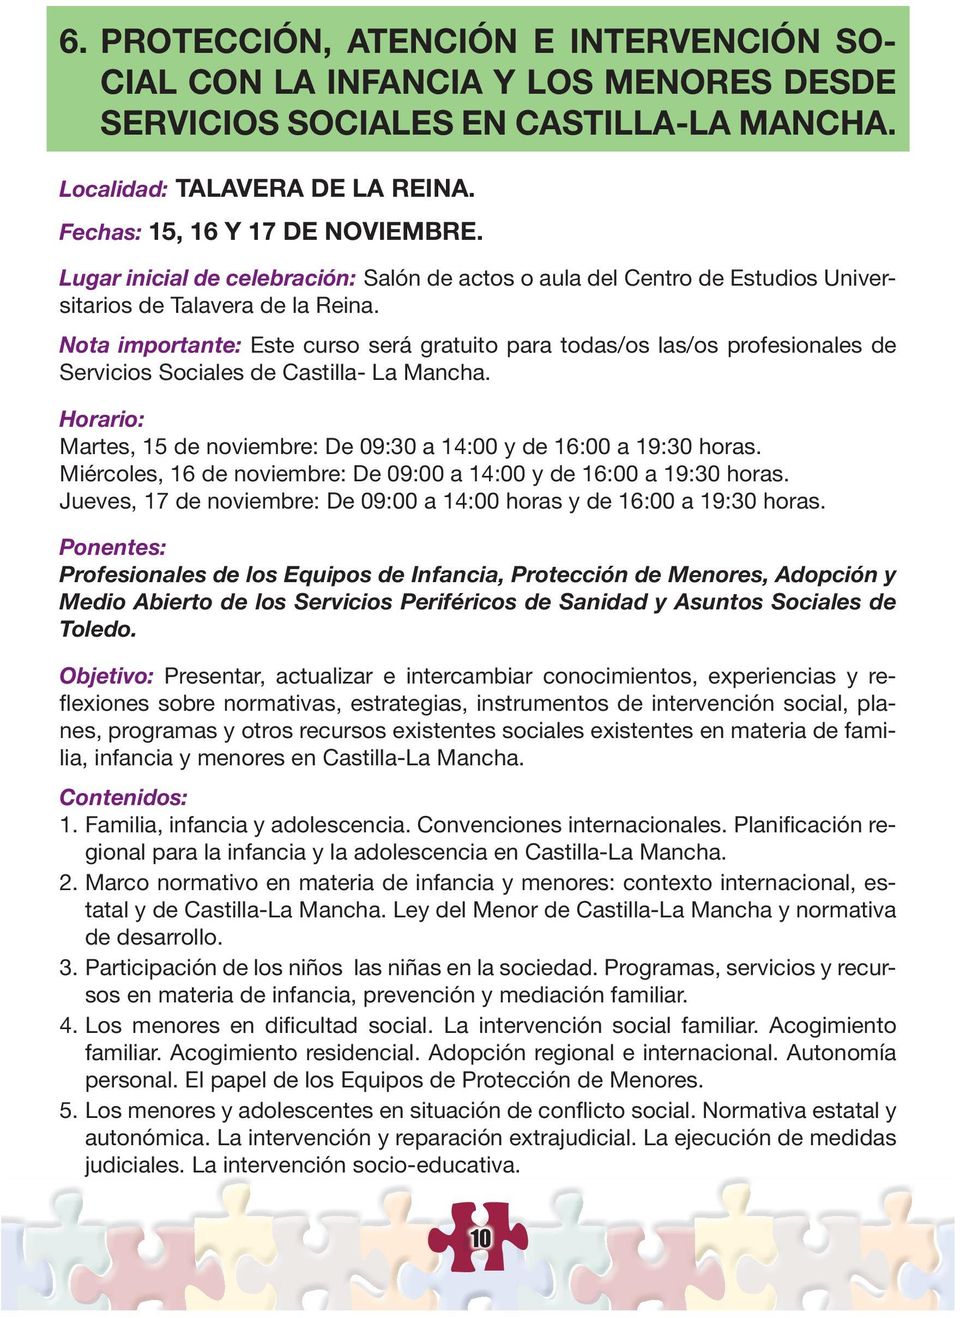 Nota importante: Este curso será gratuito para todas/os las/os profesionales de Servicios Sociales de Castilla- La Mancha. Martes, 15 de noviembre: De 09:30 a 14:00 y de 16:00 a 19:30 horas.